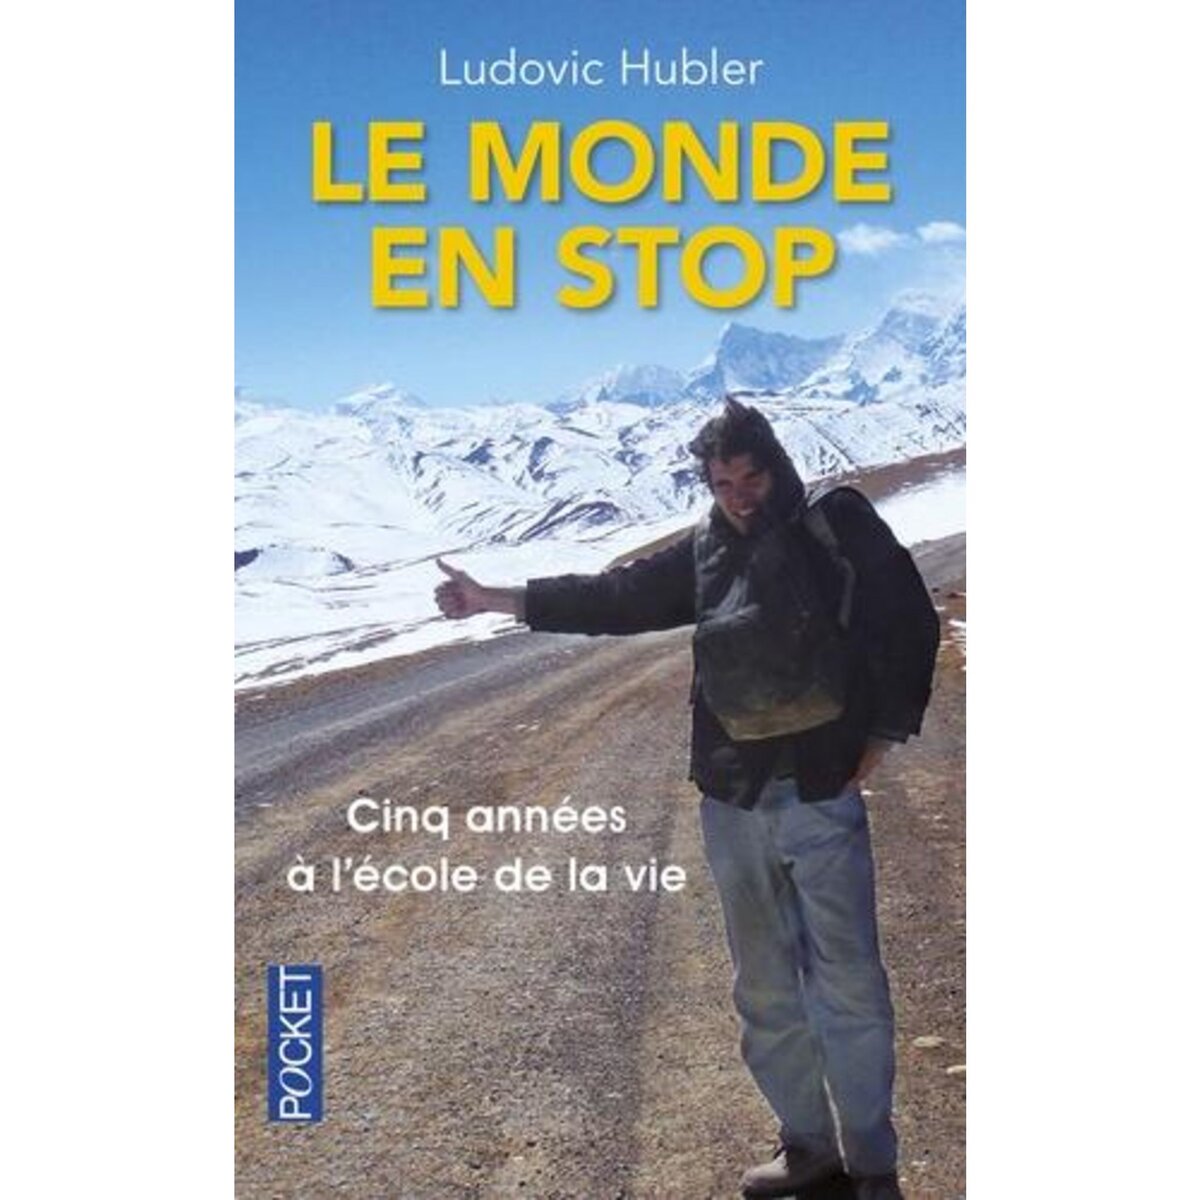  LE MONDE EN STOP. CINQ ANNEES A L'ECOLE DE LA VIE, EDITION REVUE ET CORRIGEE, Hubler Ludovic